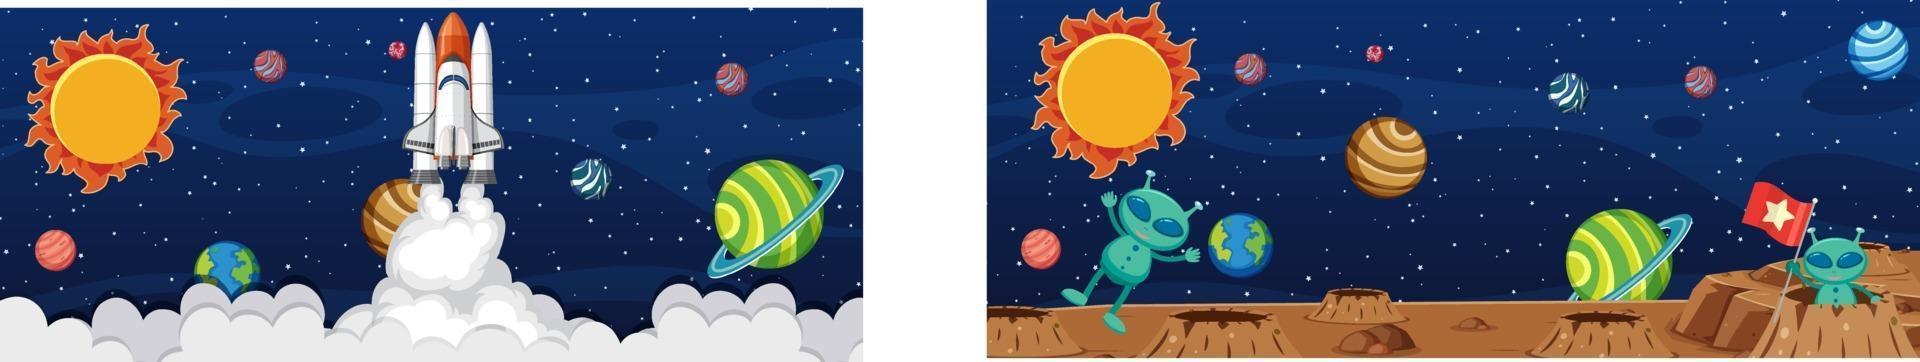 Dos extraterrestres en la escena de la galaxia con muchos planetas. vector